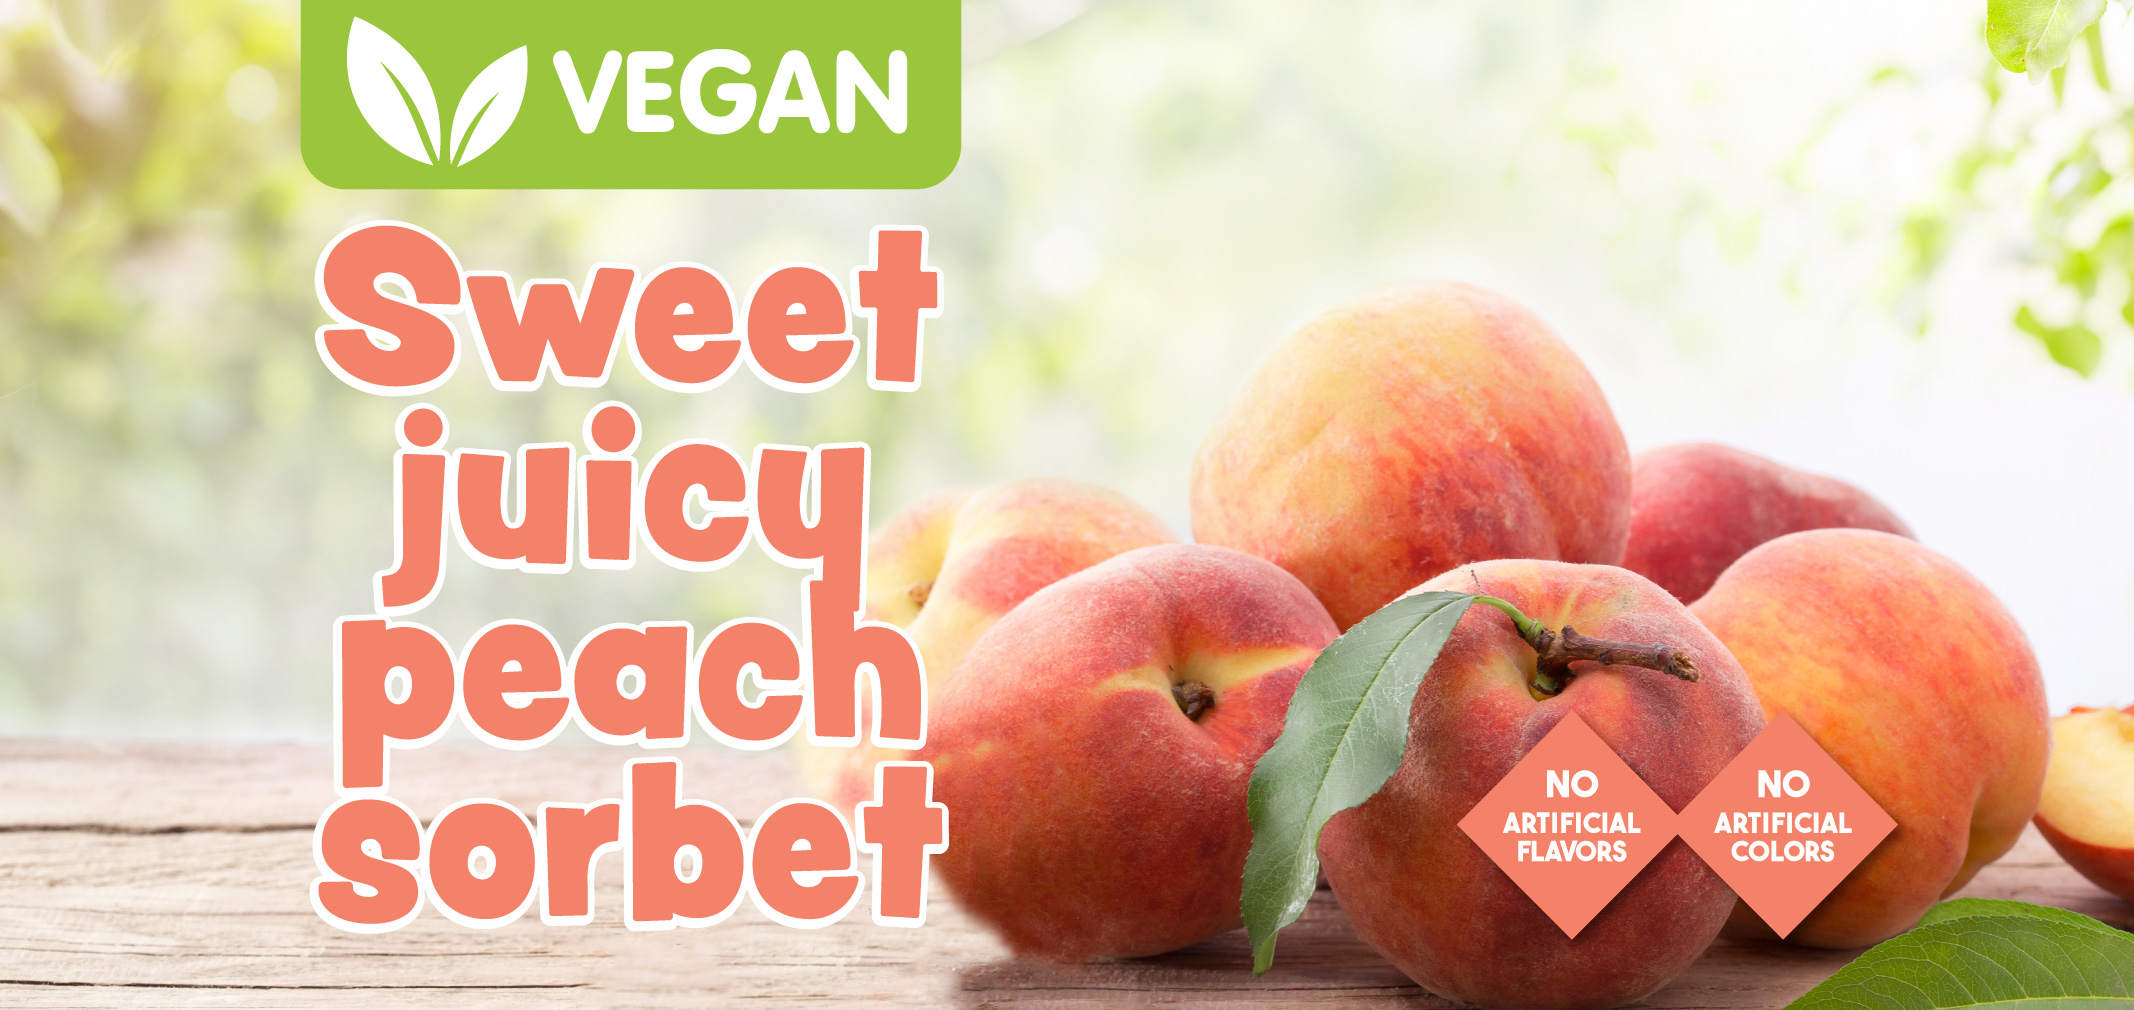 vegan sweet juicy peach sorbet label image